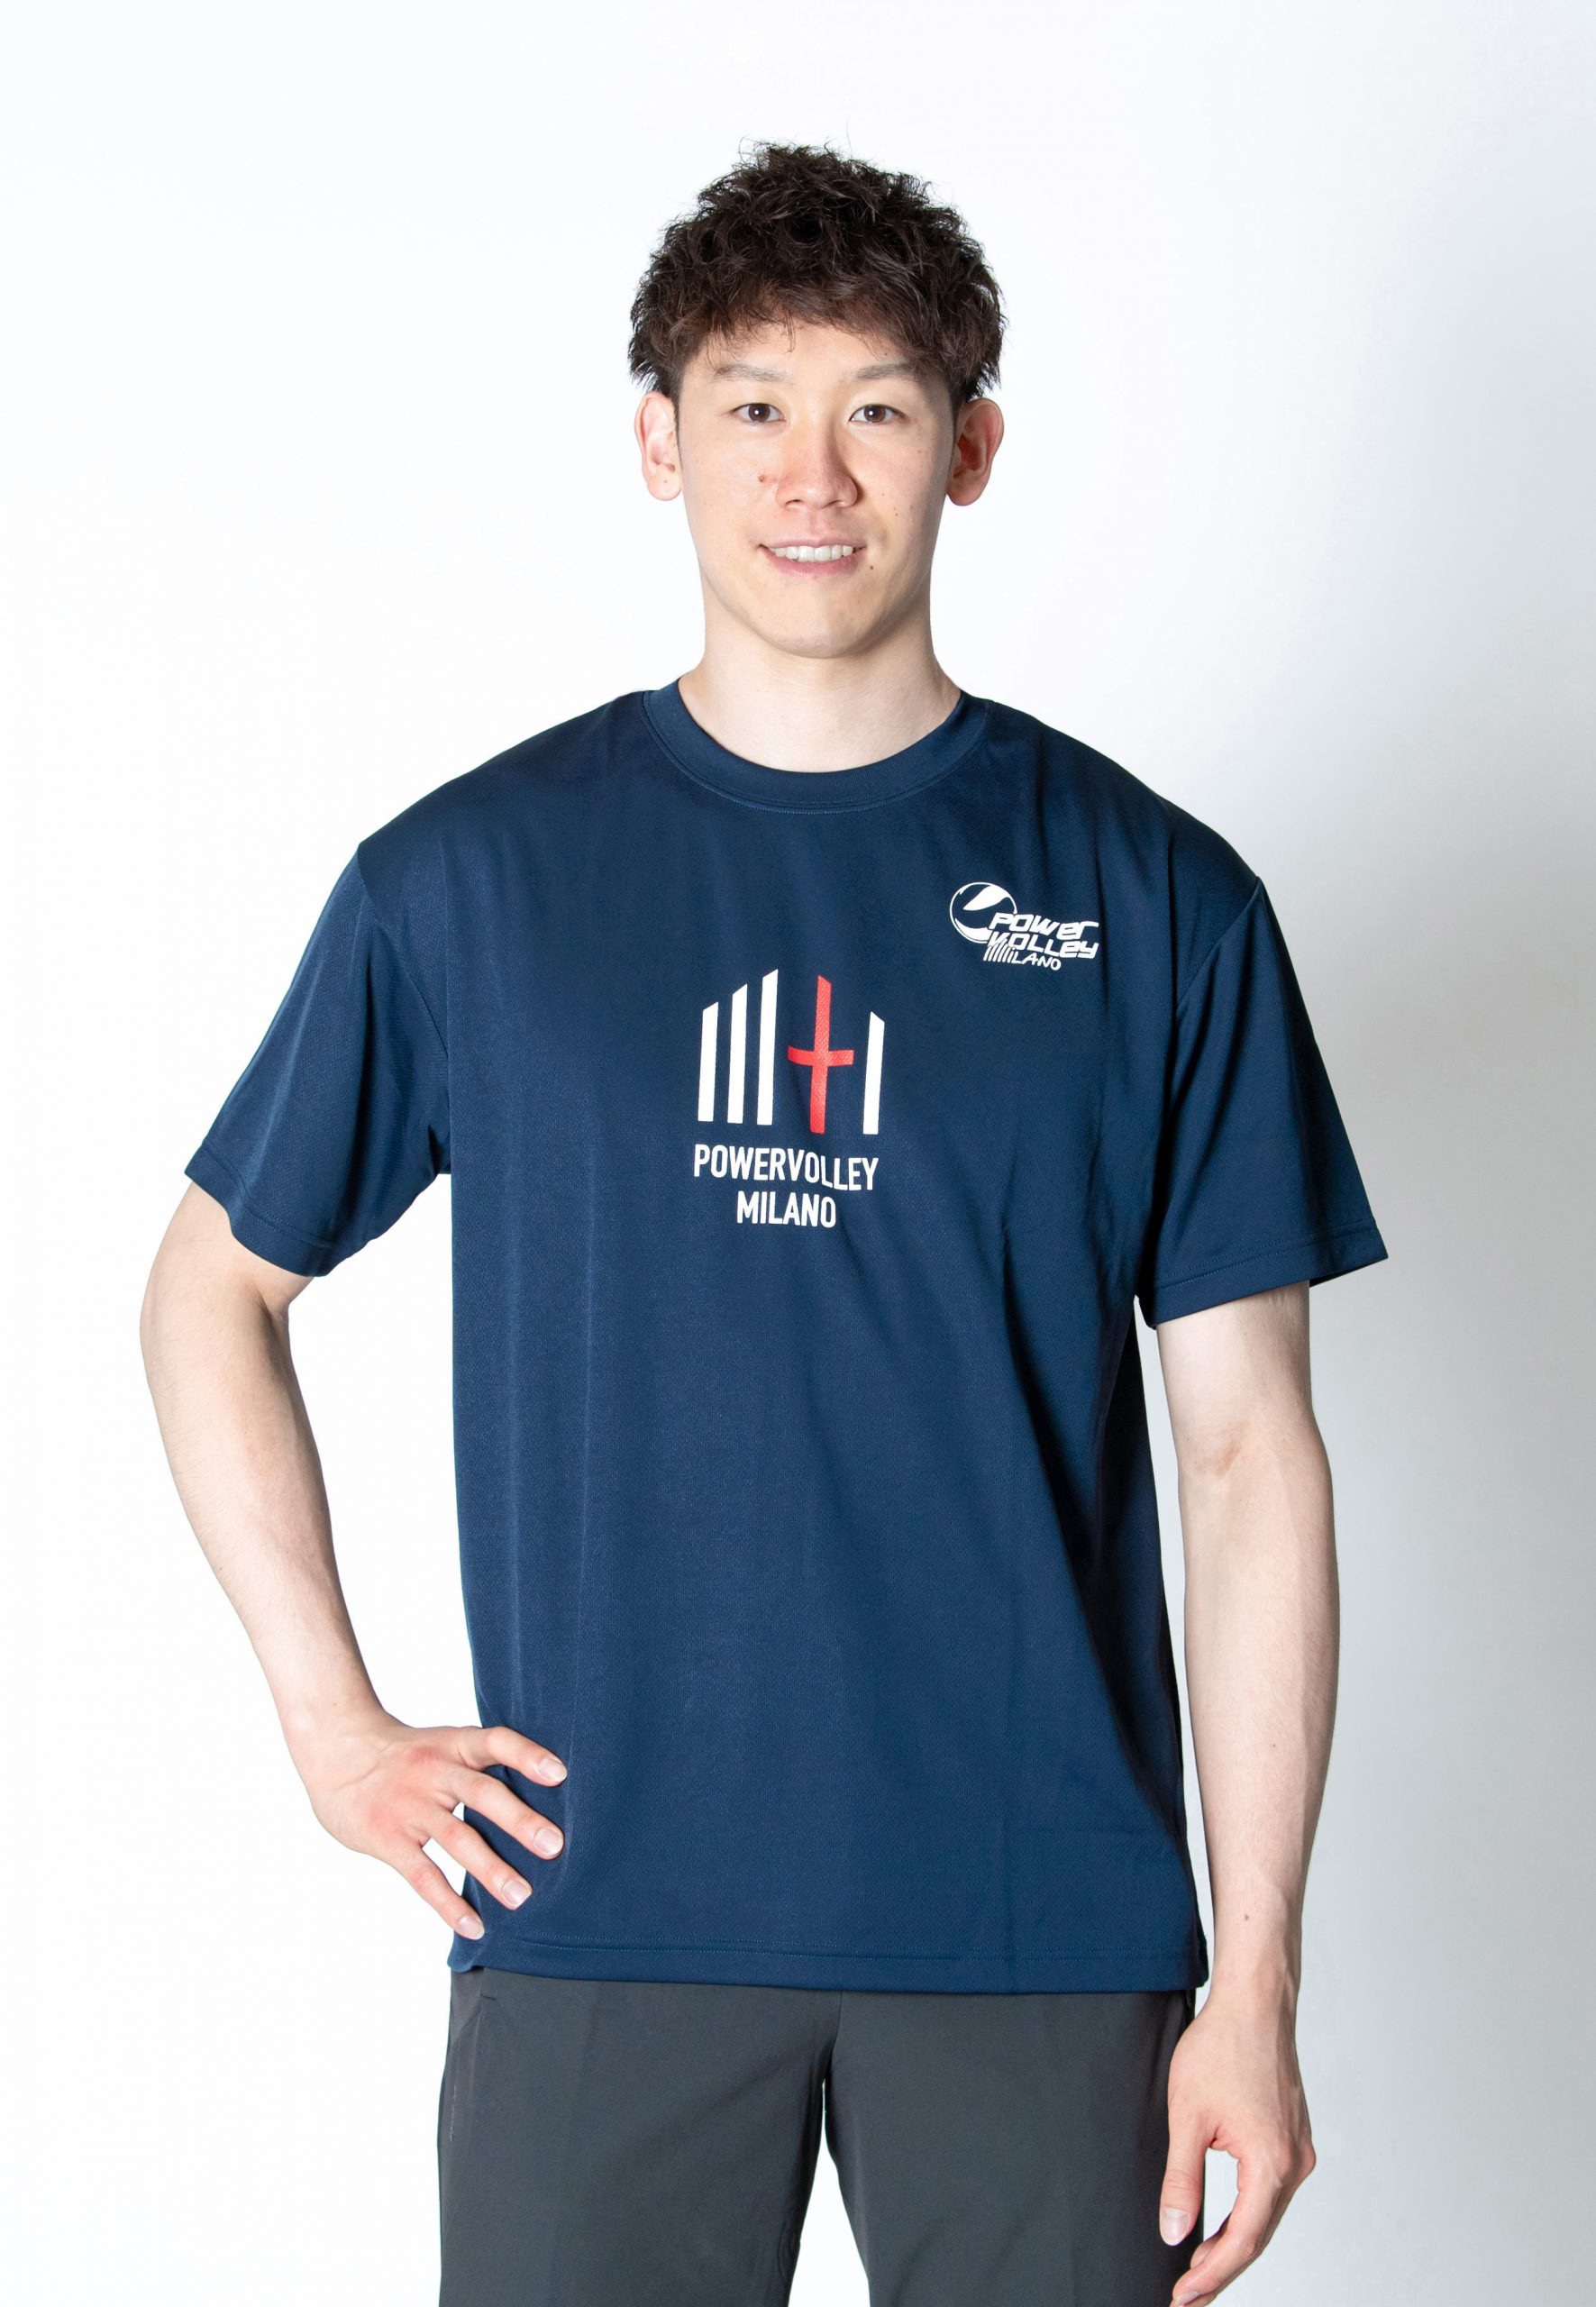 石川祐希選手 パワーバレー・ミラノ 日本限定オフィシャル T シャツ